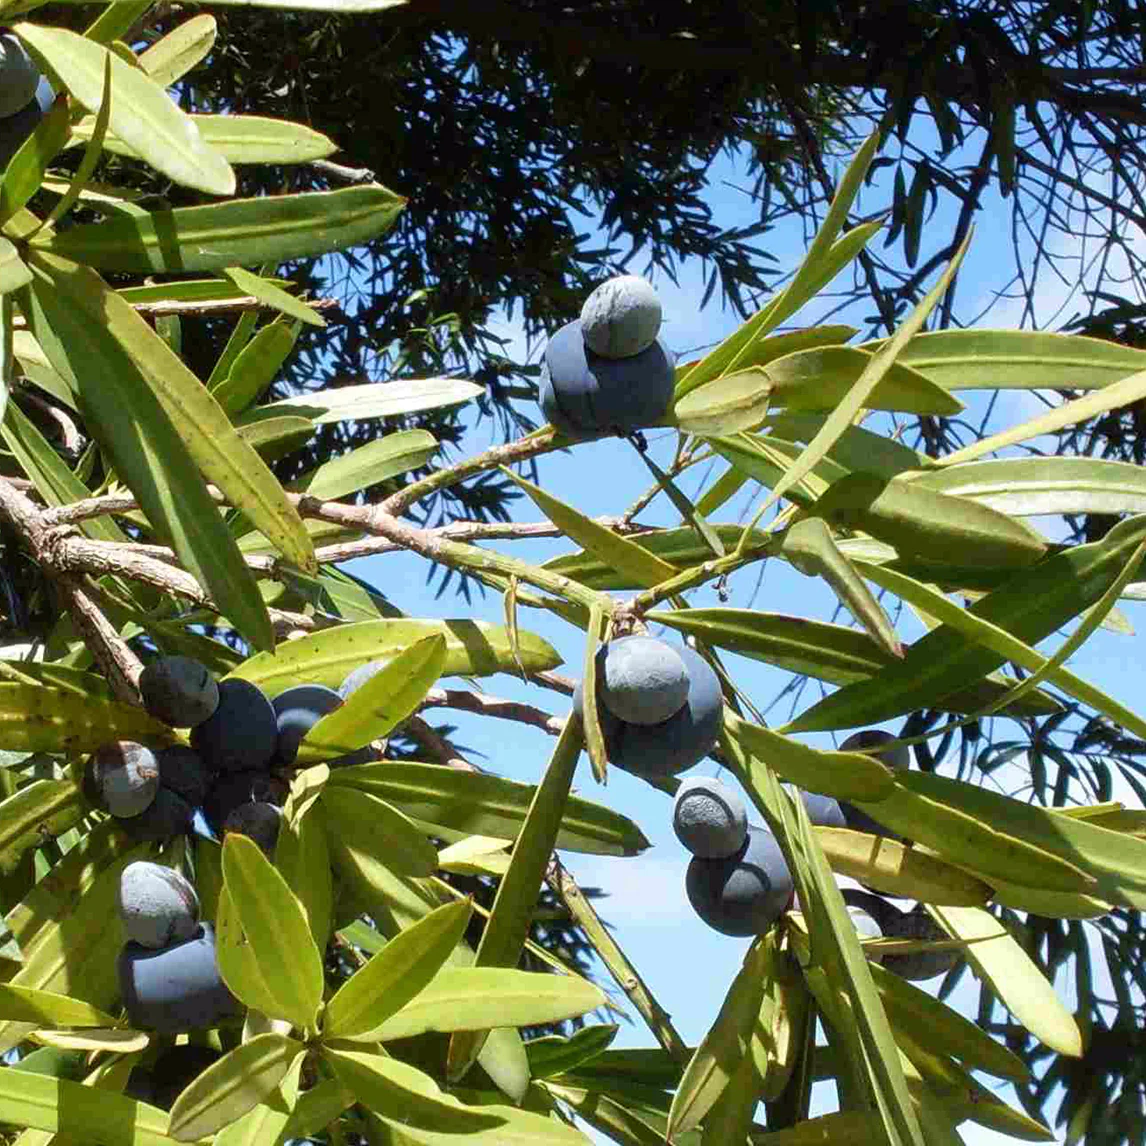 Podocarpus elatus